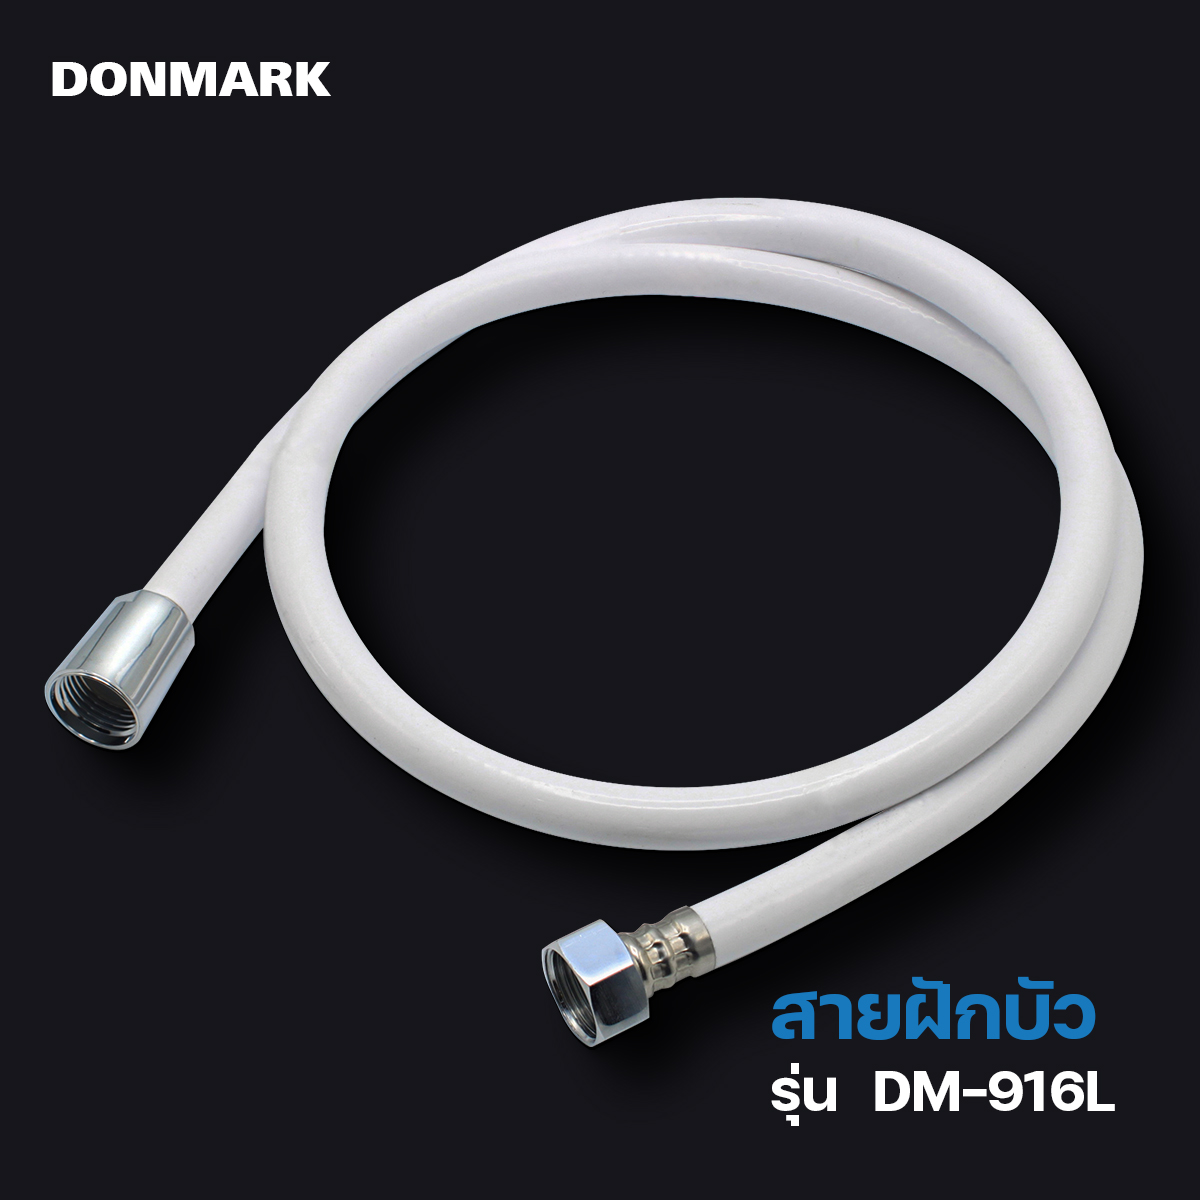 Donmark สายฝักบัว/สายฉีดชำระ สีขาว ความยาว 1.2 เมตร รุ่น DM-916L